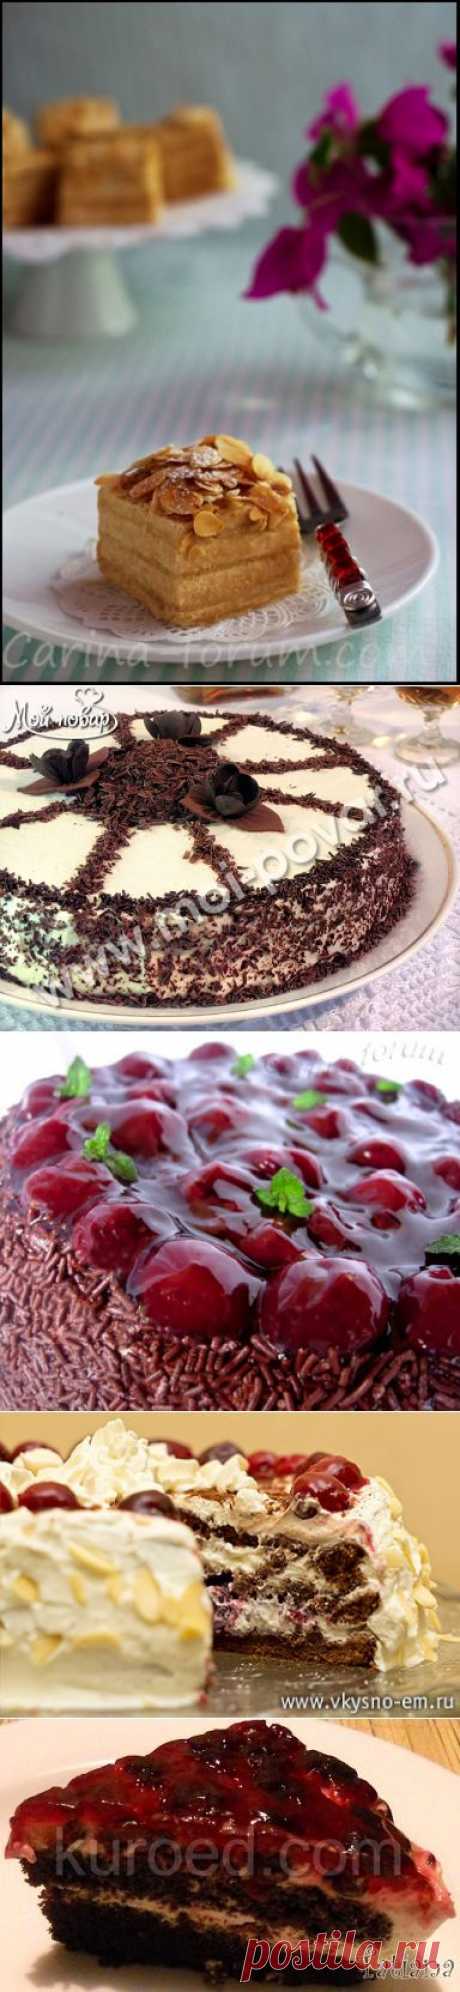 шоколадный торт с вишней - Самое интересное в блогах